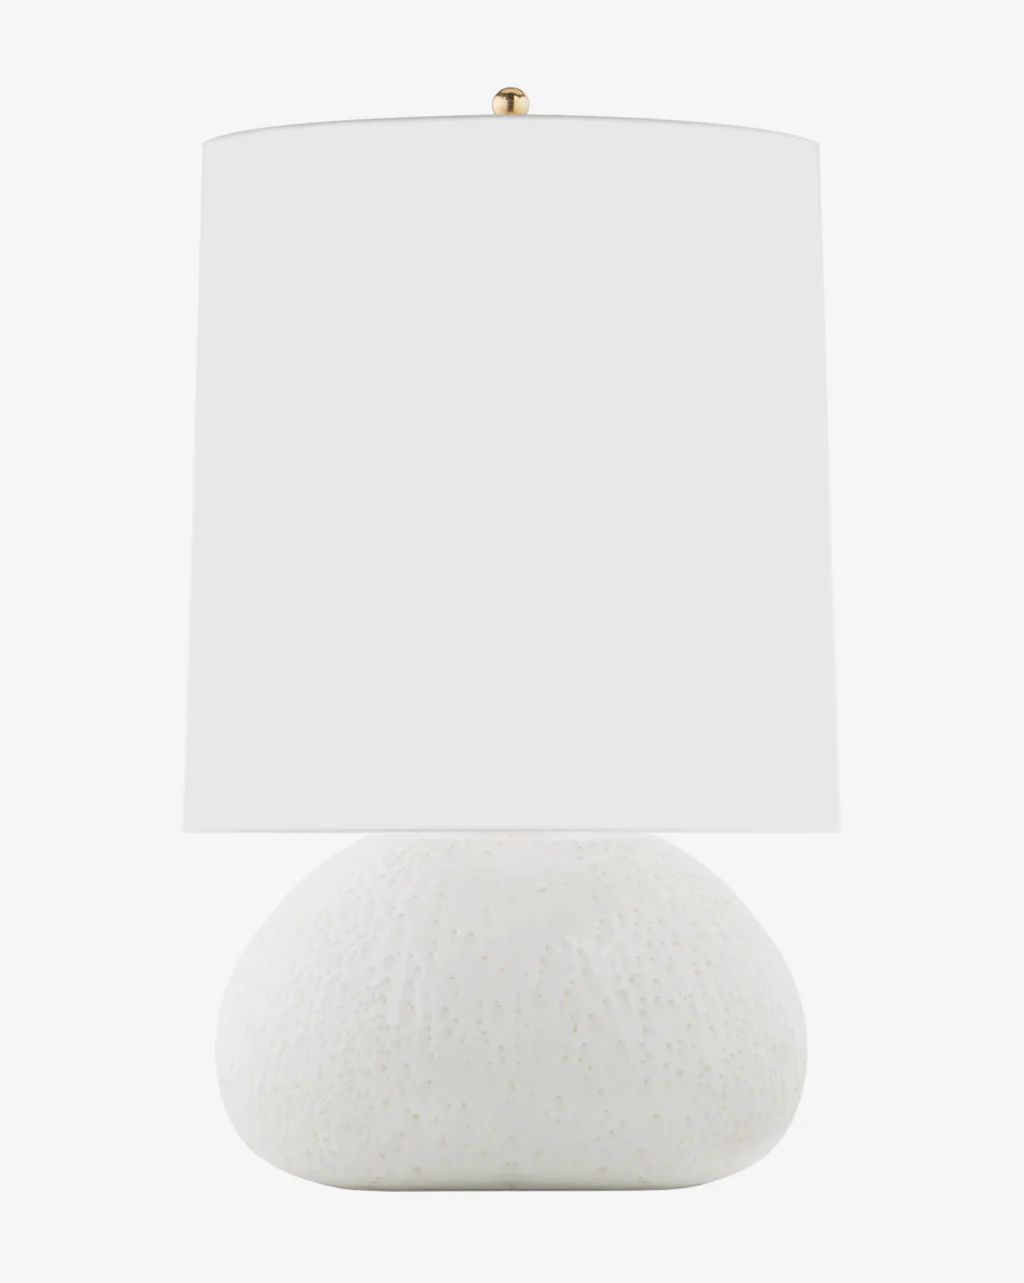 Sumava Table Lamp | McGee & Co.